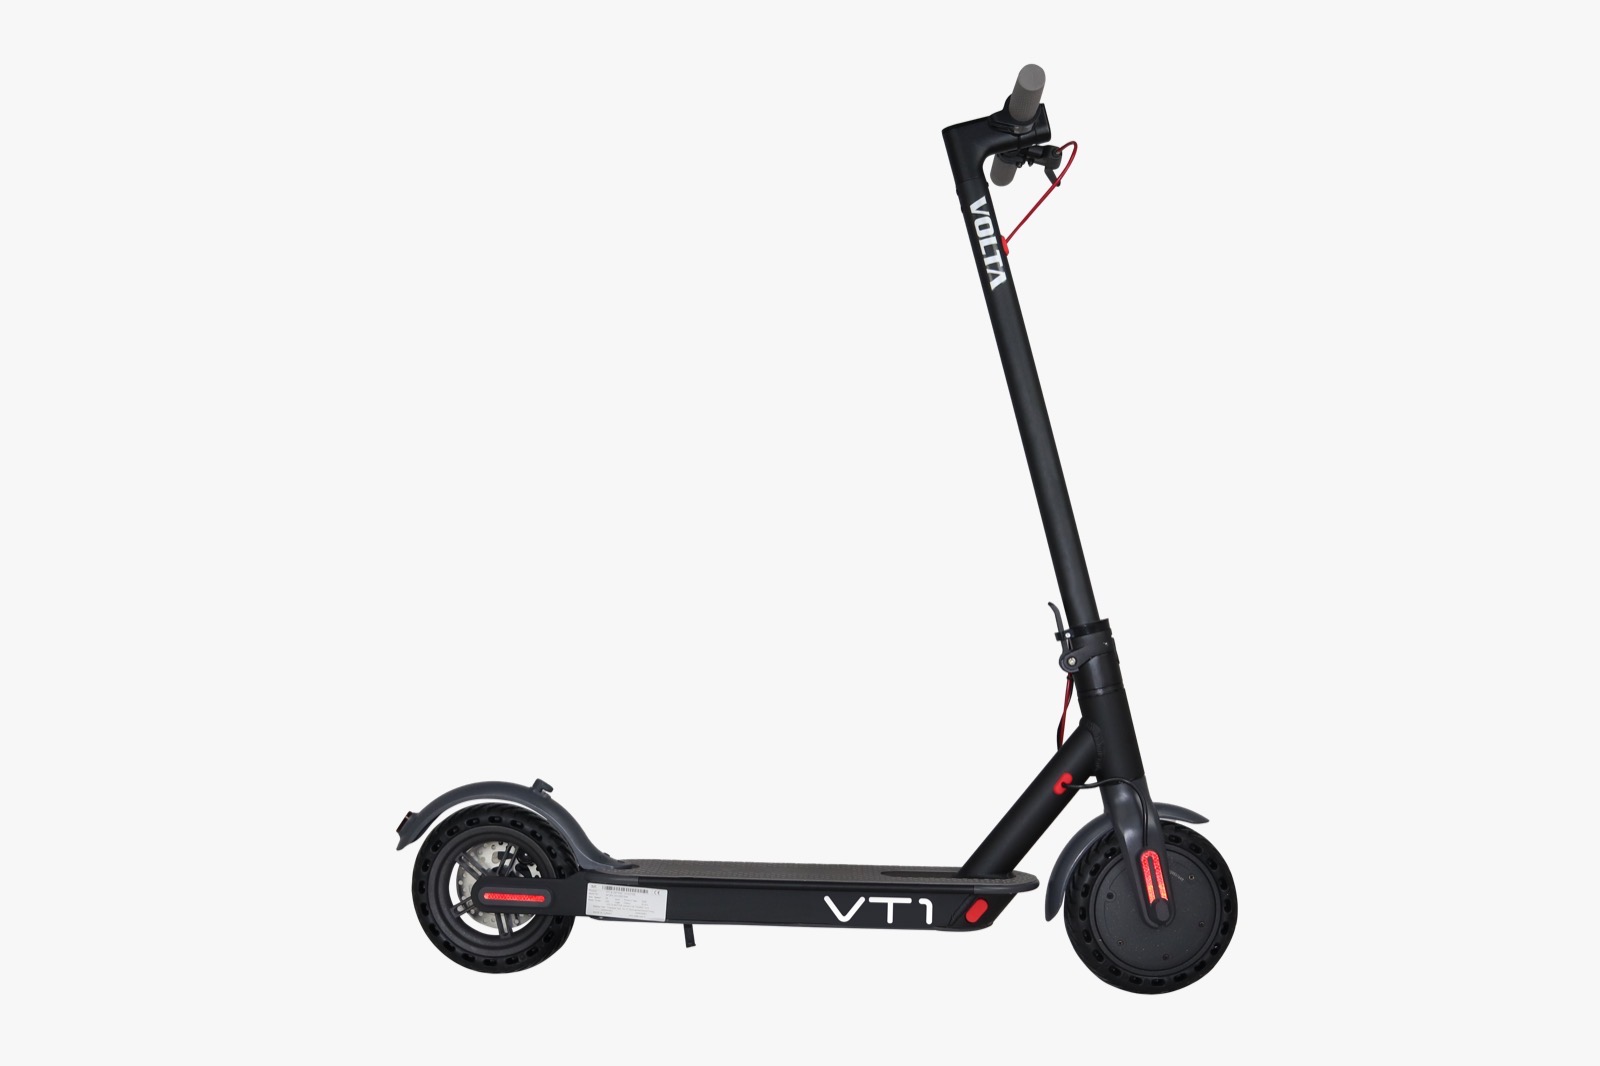 Volta VT1 Elektrikli Scooter